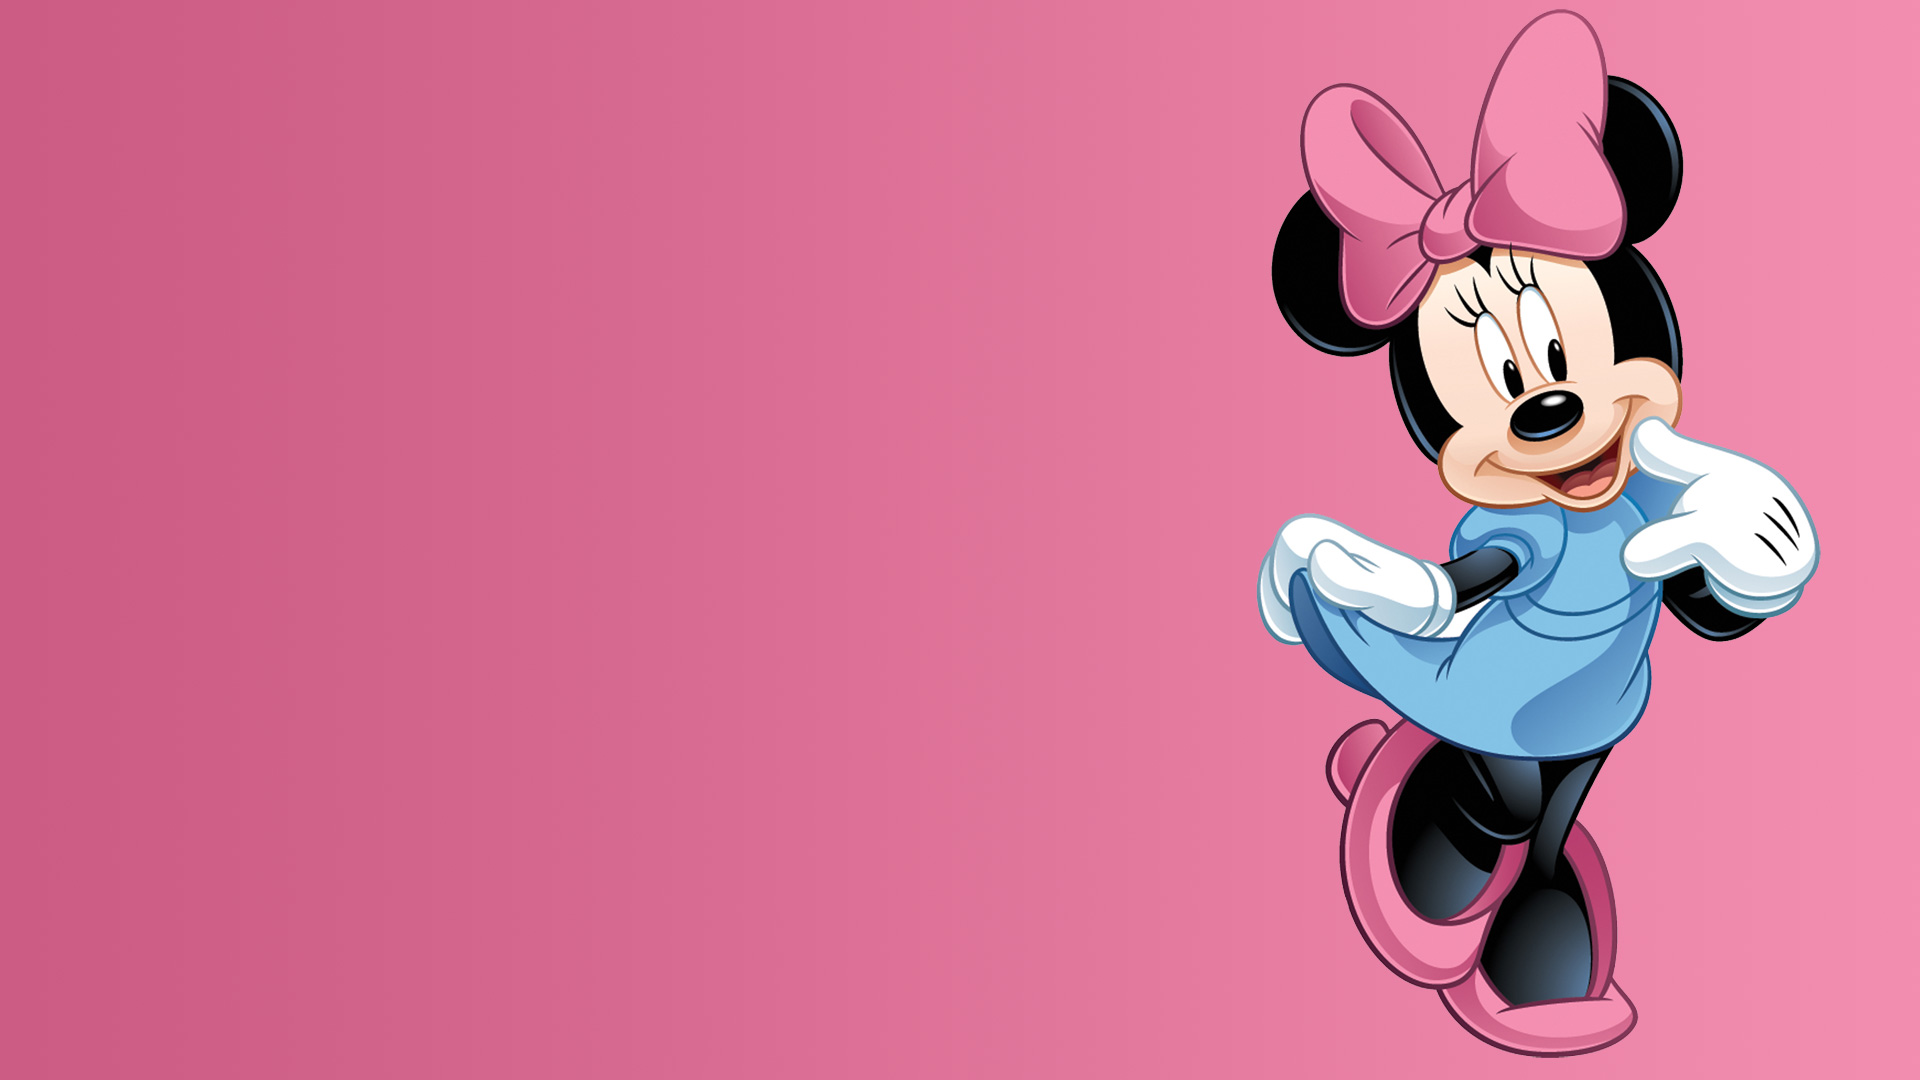 46+] Minnie Mouse Wallpaper for Desktop - WallpaperSafari